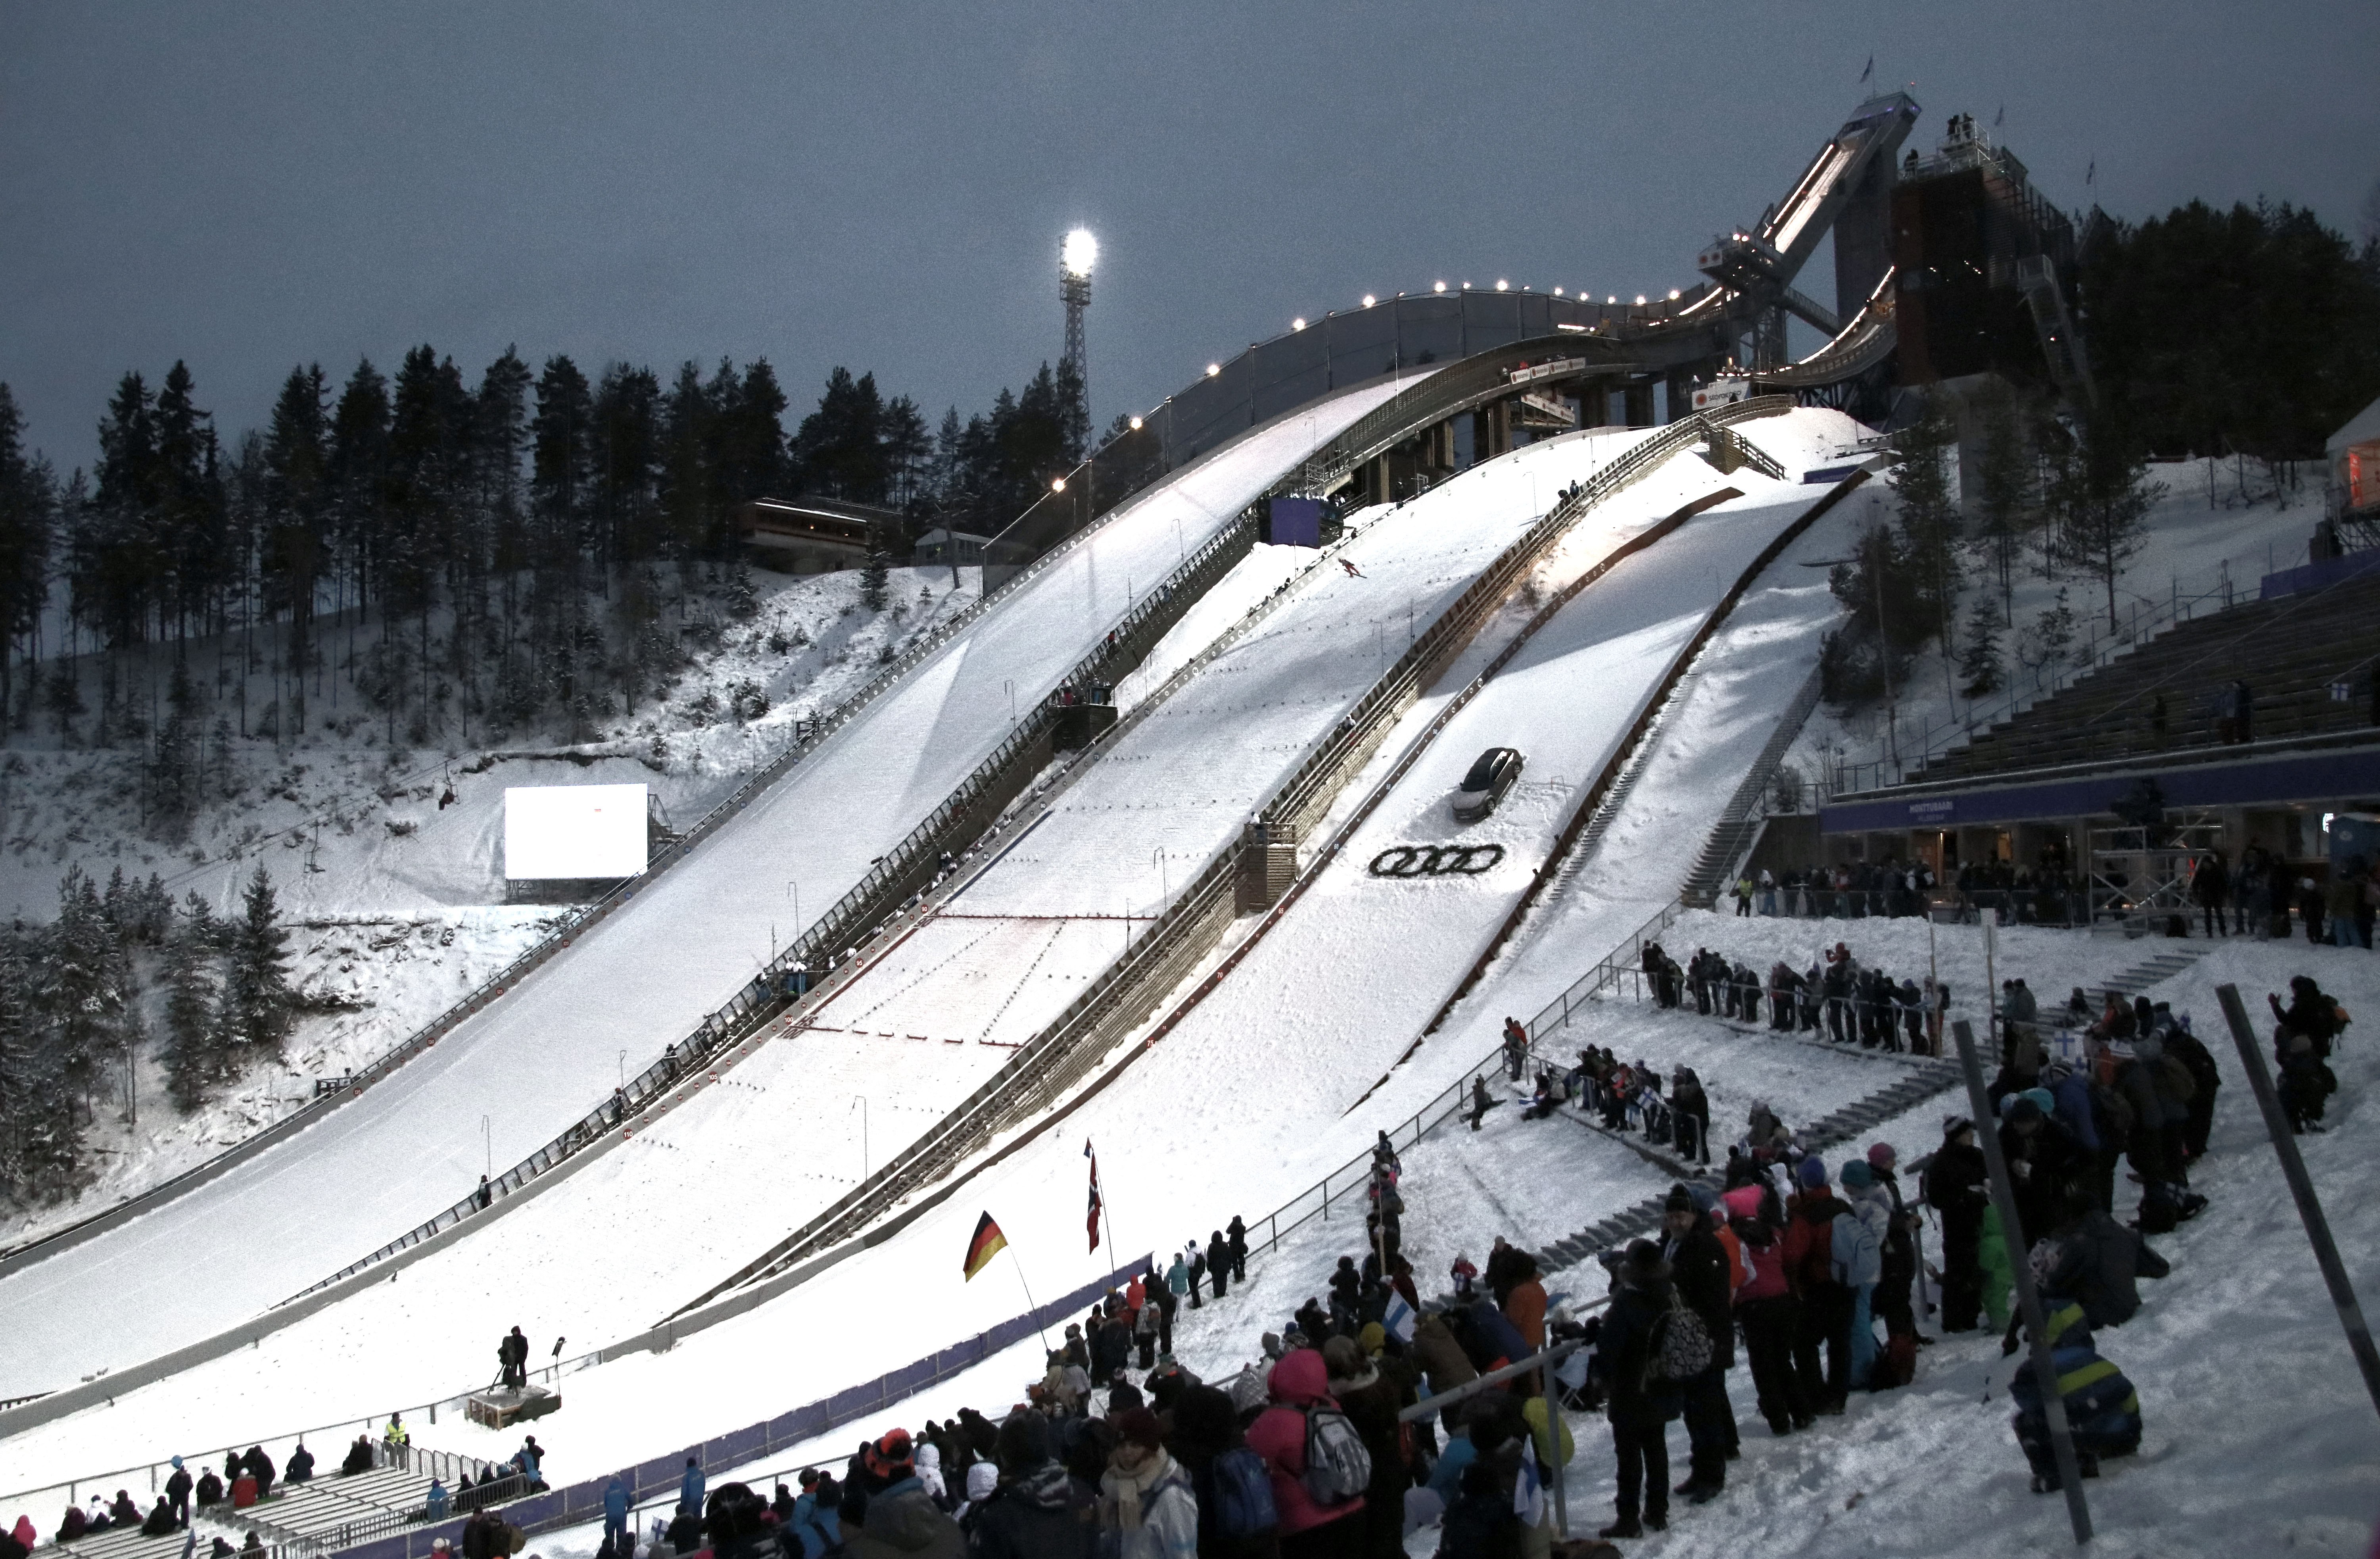 Виды лыжного спорта прыжки с трамплина. Трамплин лыжный Лахти. Лахти Финляндия вид с трамплина. Лыжный спорт прыжки с трамплина. Прыжки на лыжах с трамплина трамплин.